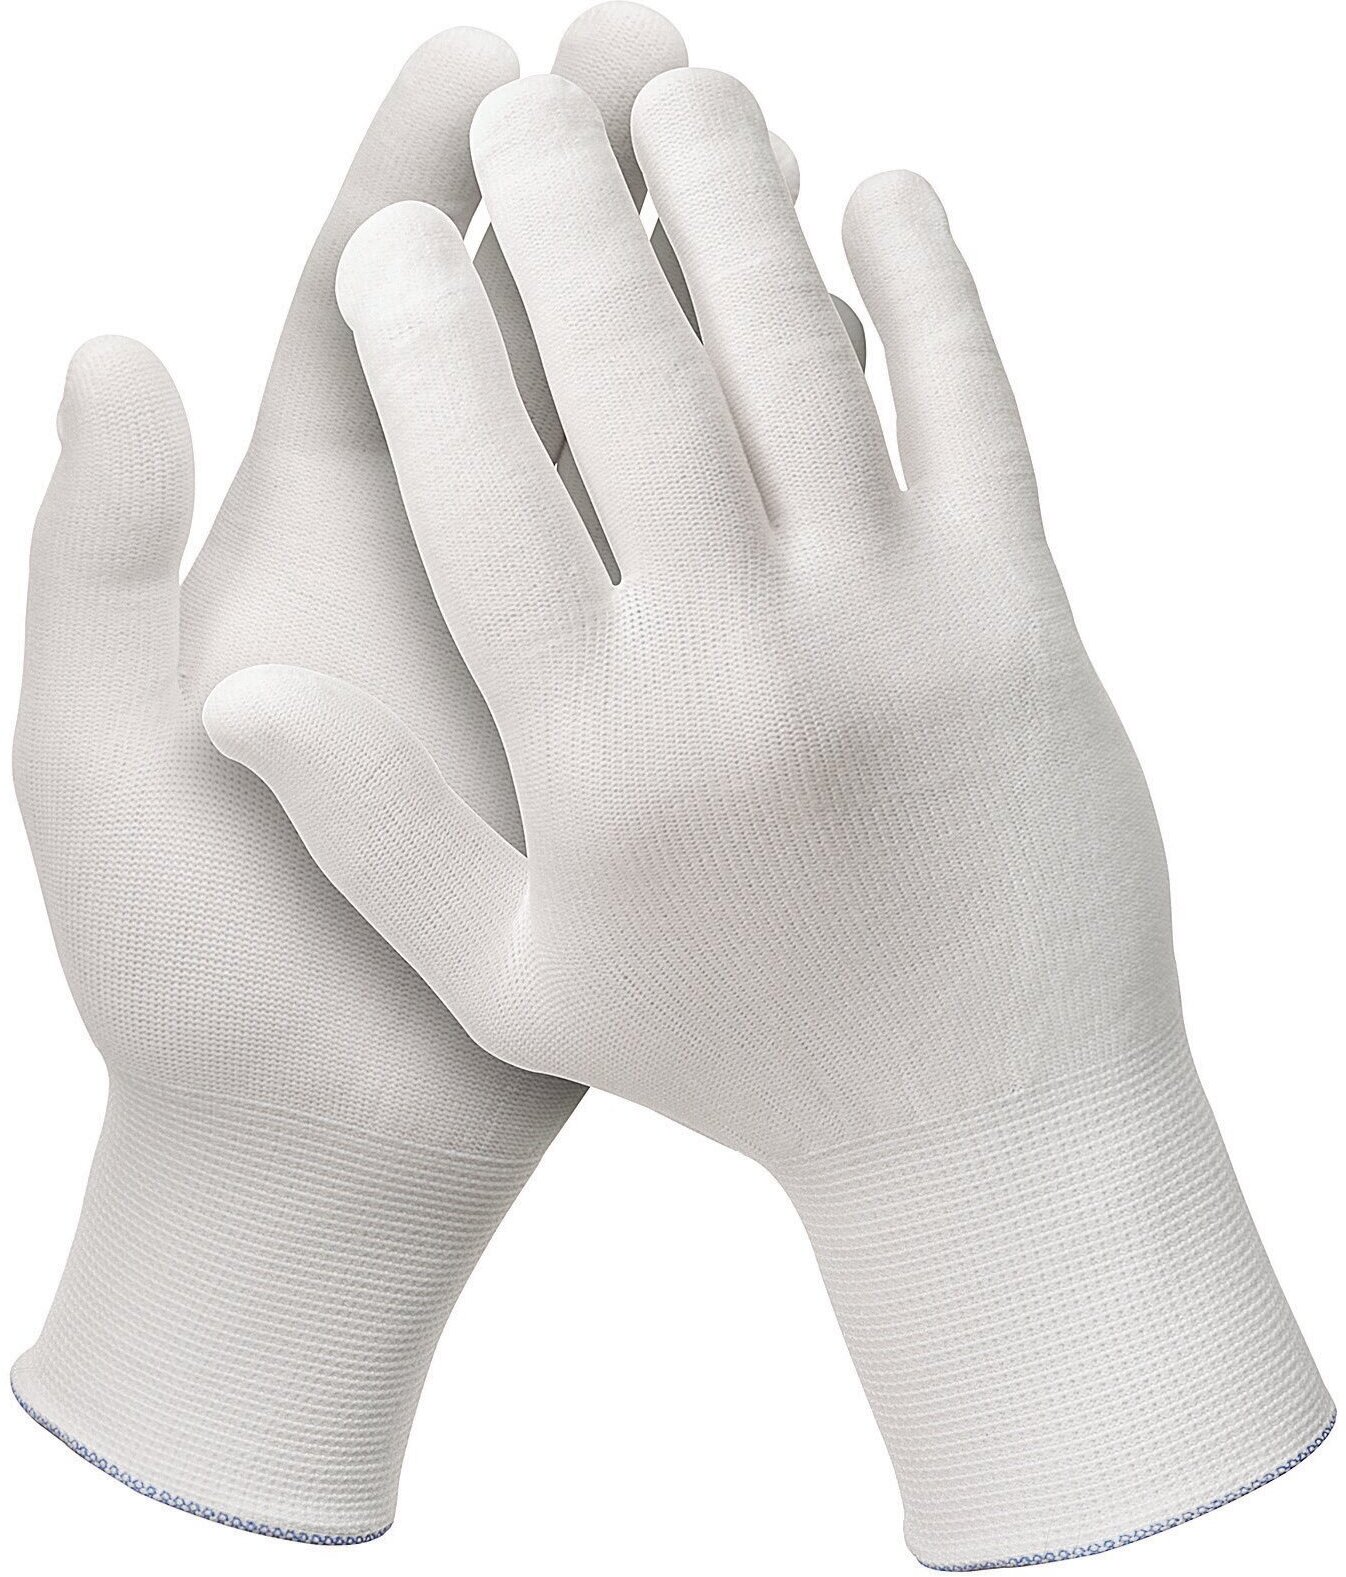 Нейлоновые перчатки ( инспекционные ) KLEENGUARD™ G35 White Nylon арт. 38717 для проверки поверхности на предмет отсутствия дефектов, размер 7 ( S )